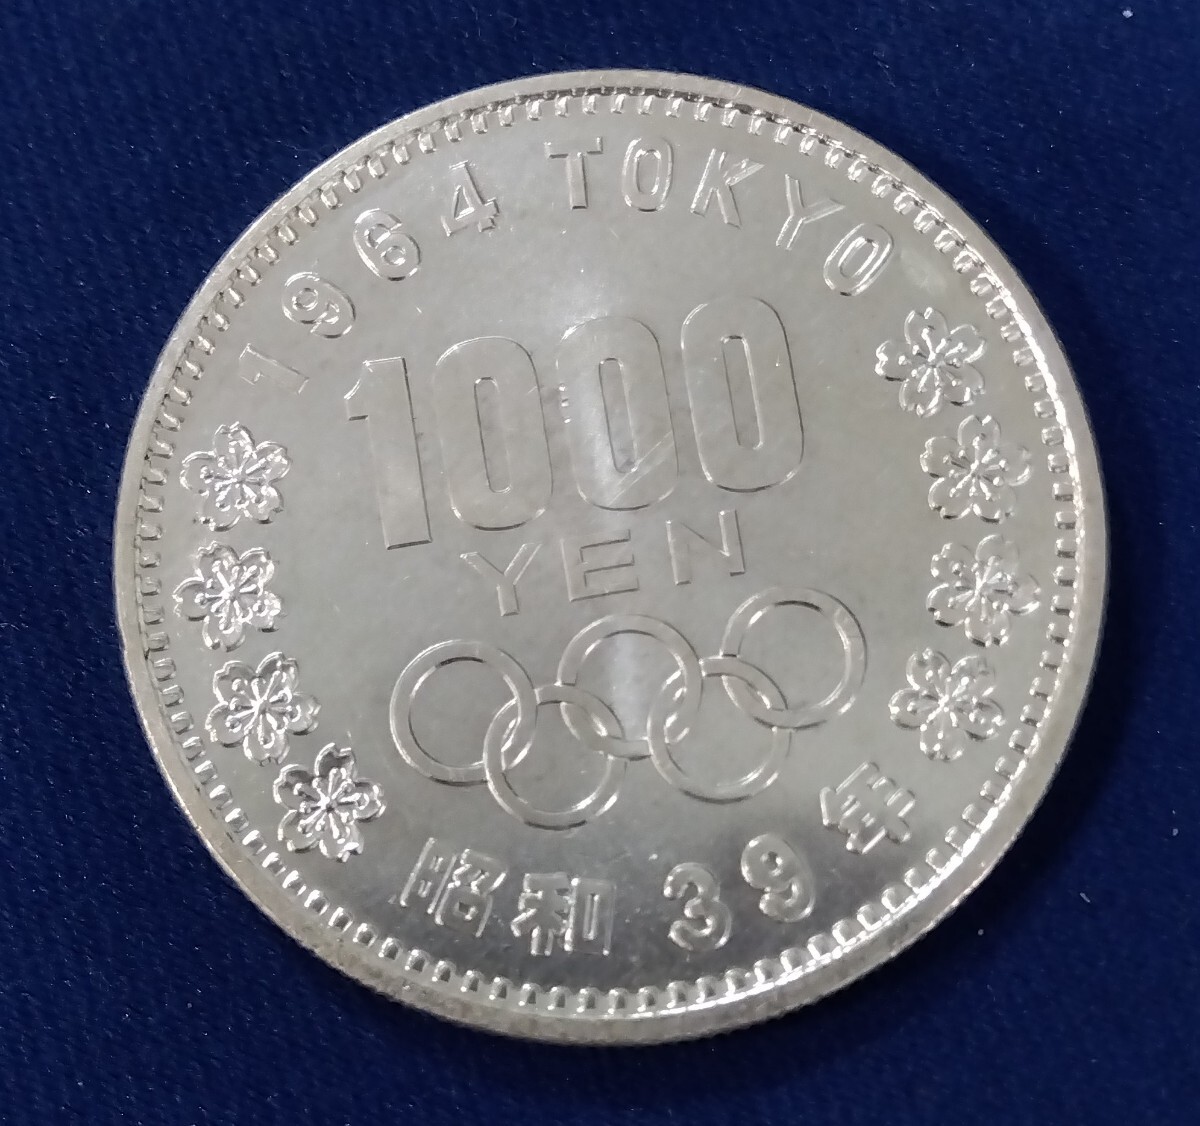 東京オリンピック 記念硬貨 東京オリンピック記念硬貨 千円銀貨 東京オリンピック記念 銀貨 1000円銀貨 の画像2